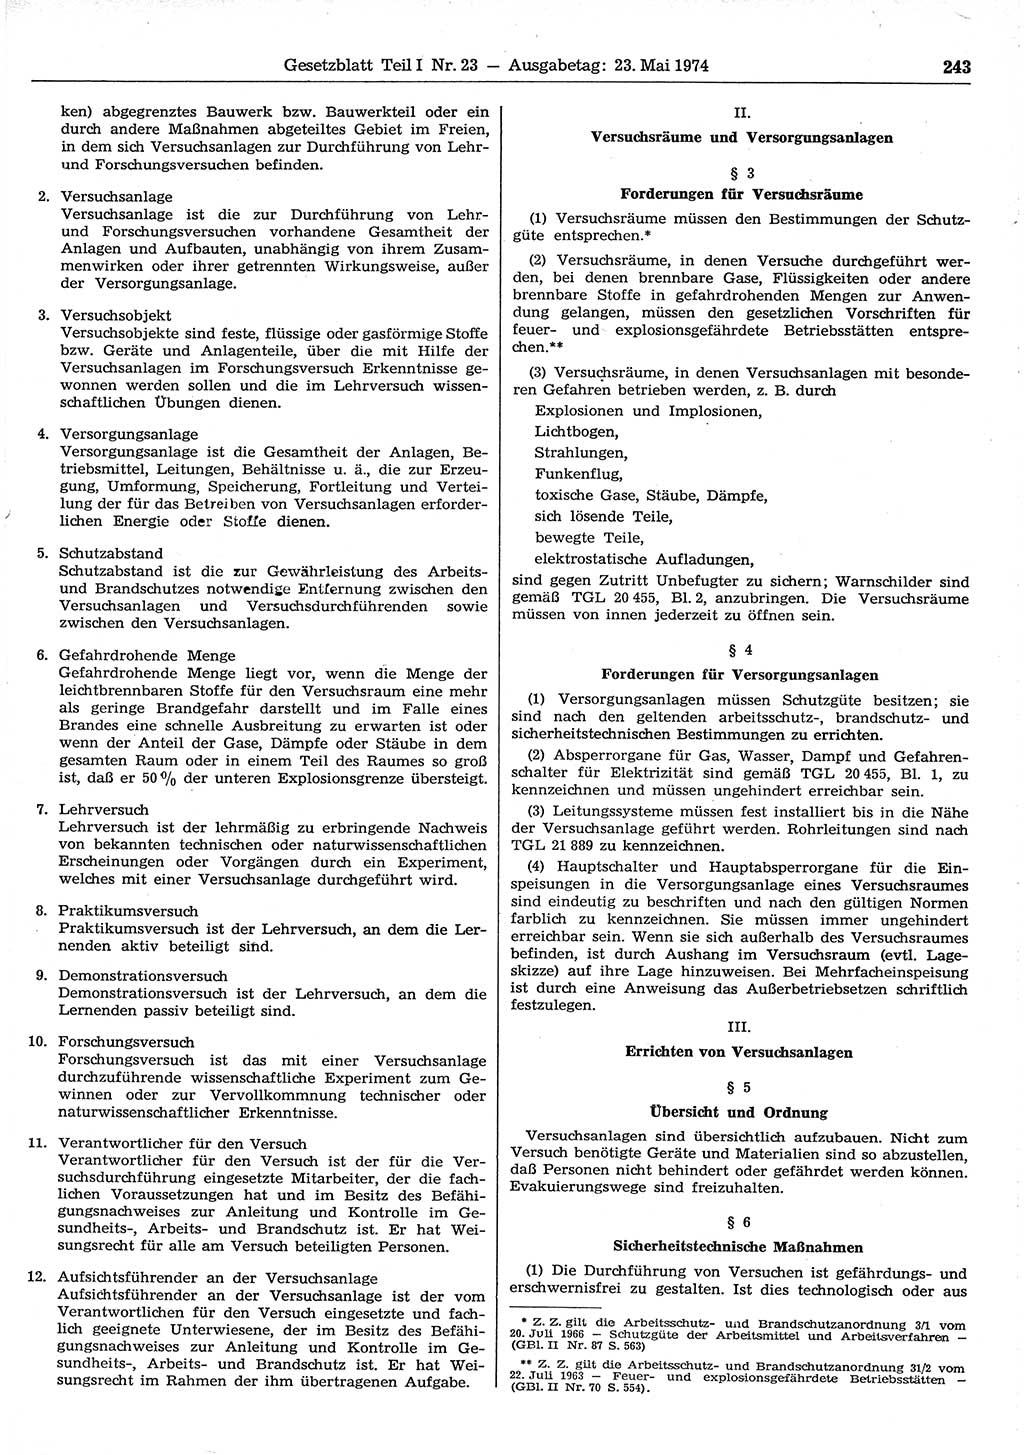 Gesetzblatt (GBl.) der Deutschen Demokratischen Republik (DDR) Teil Ⅰ 1974, Seite 243 (GBl. DDR Ⅰ 1974, S. 243)